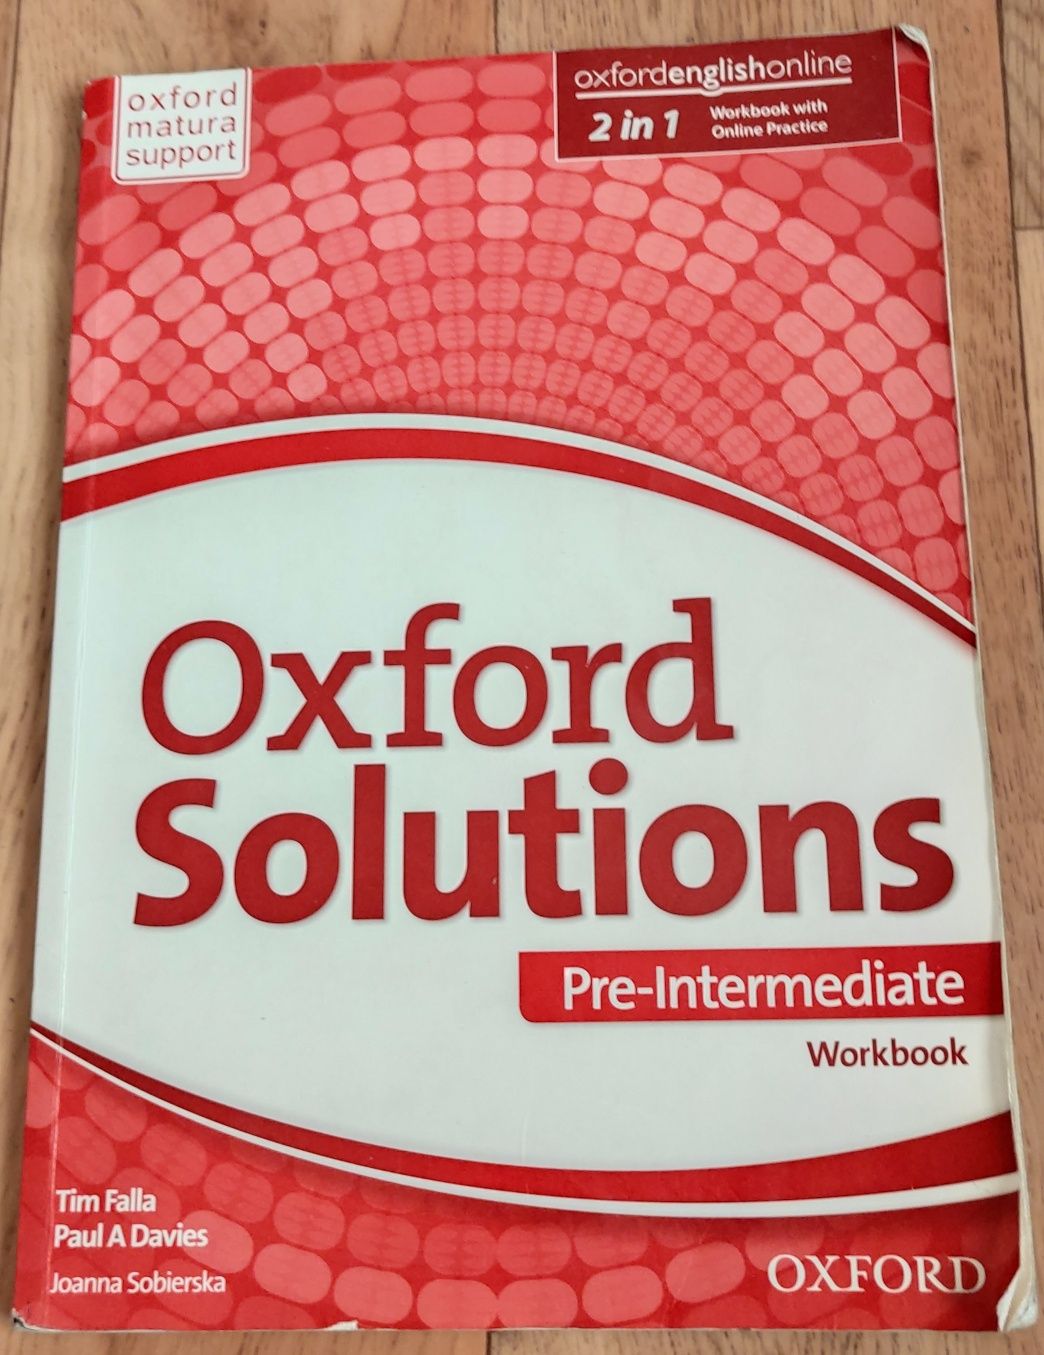 Oxford Solutions Pre-Intermediate